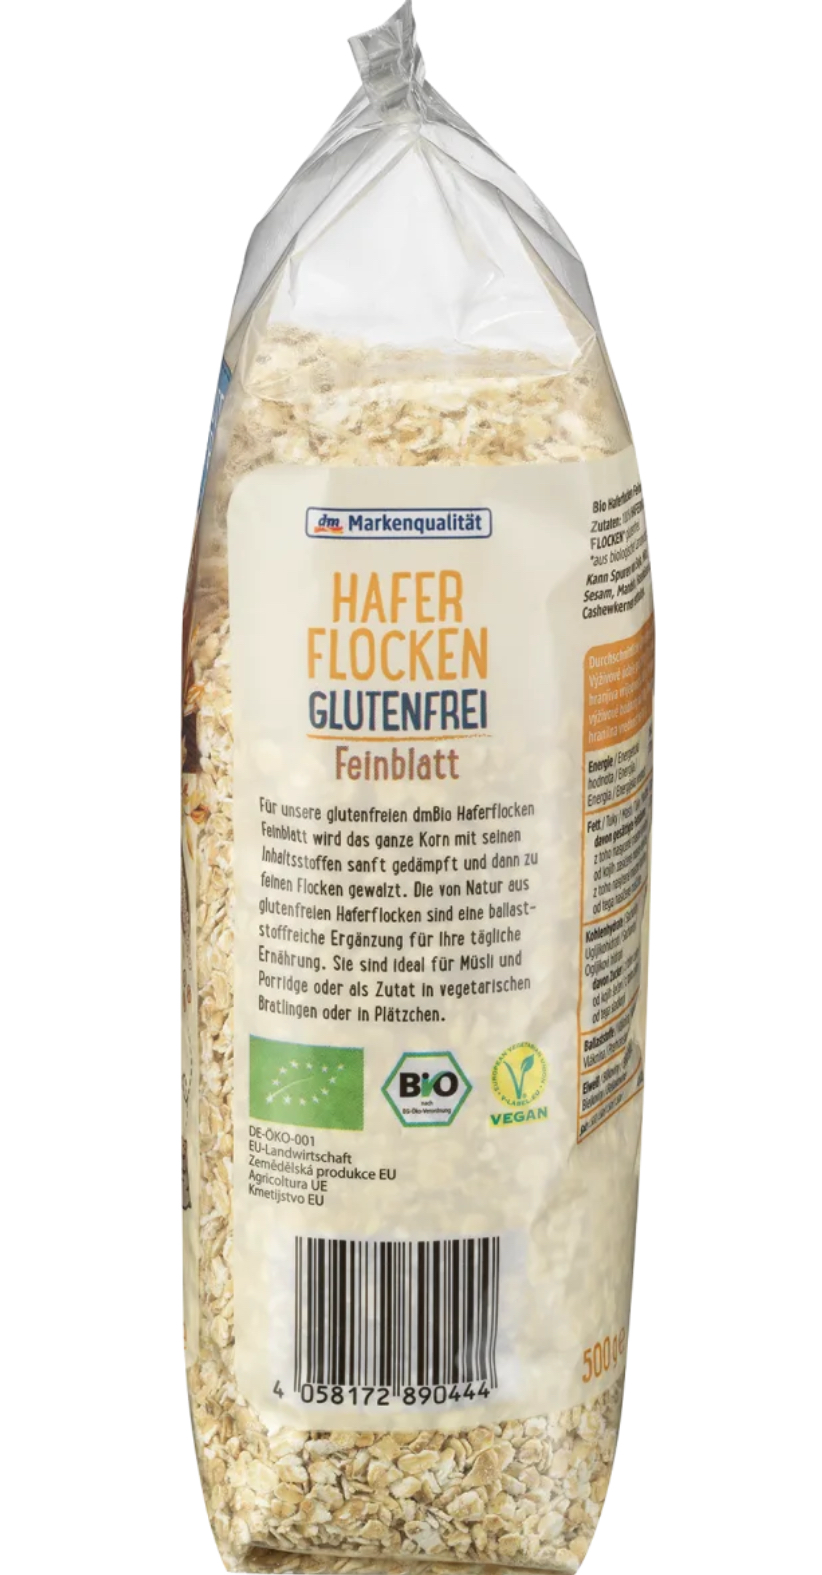 dmBio gluten free oats Bio organic certified rolled oats left side